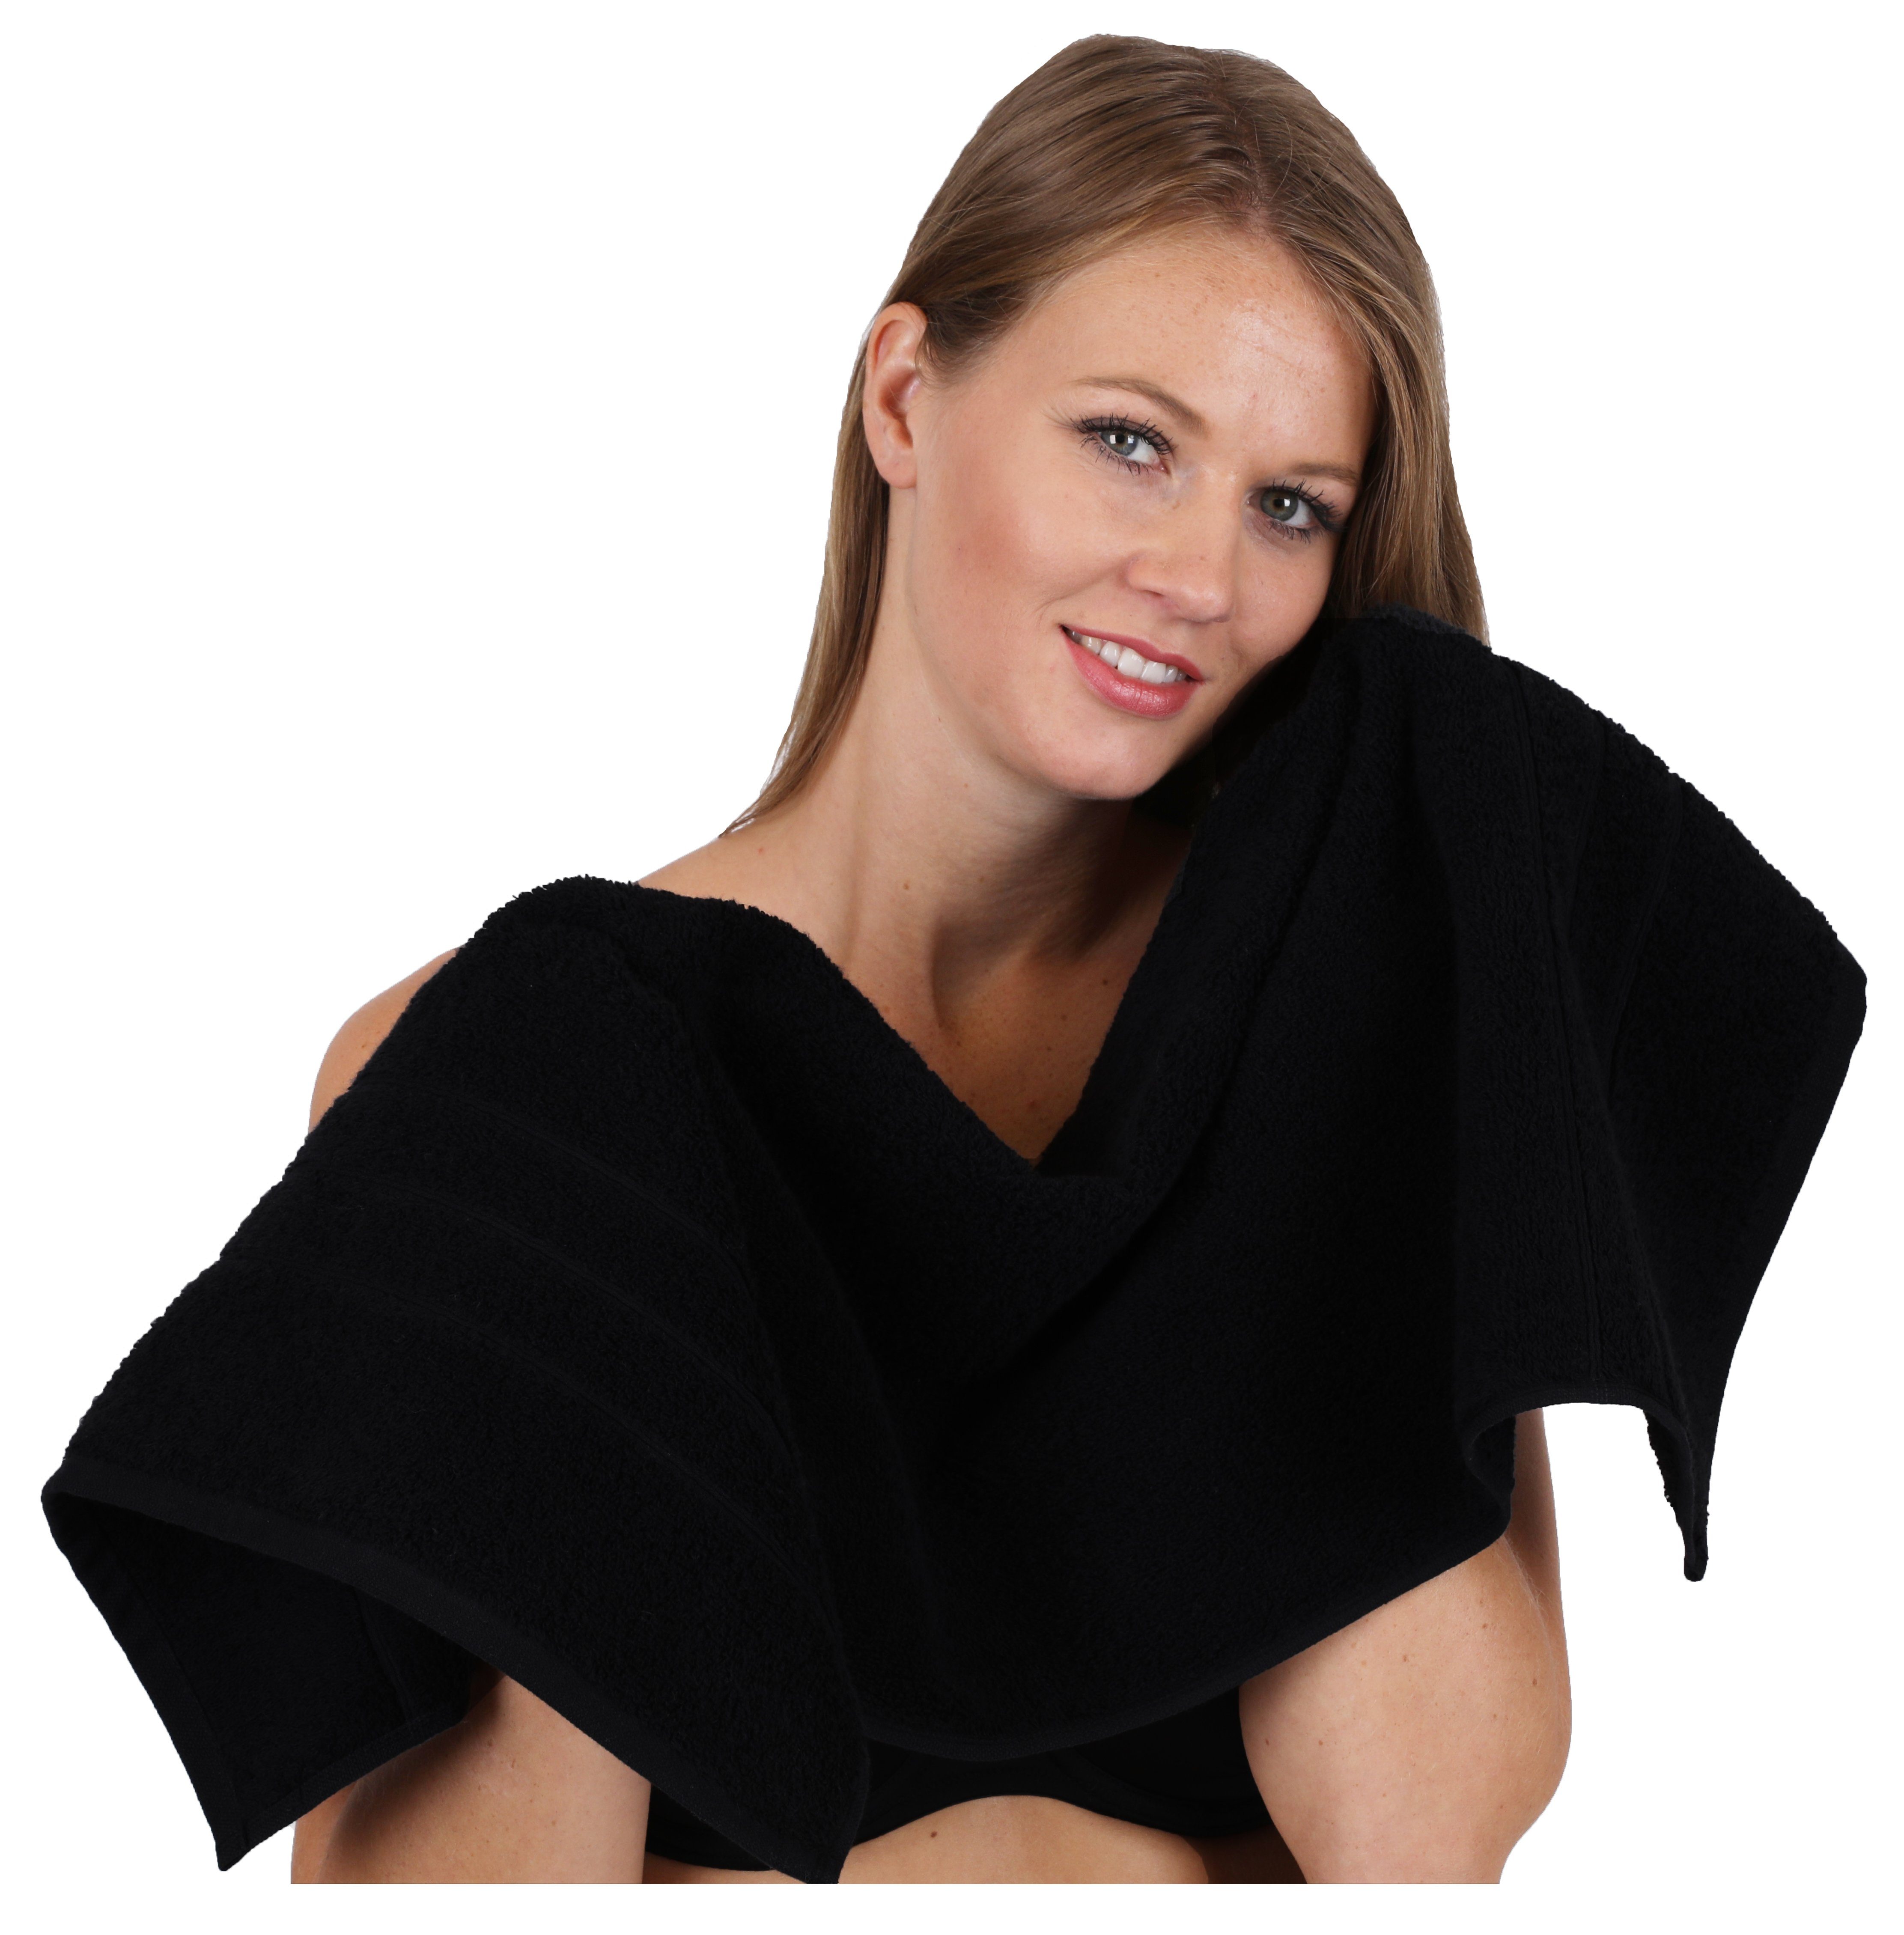 Deluxe Baumwolle, Seiftuch 1 Handtuch-Set Betz 1 schwarz, 100% 100% Handtuch Duschtuch Farbe Badetuch (4-tlg) 1 Set 1 Handtuch Baumwolle 4-TLG.